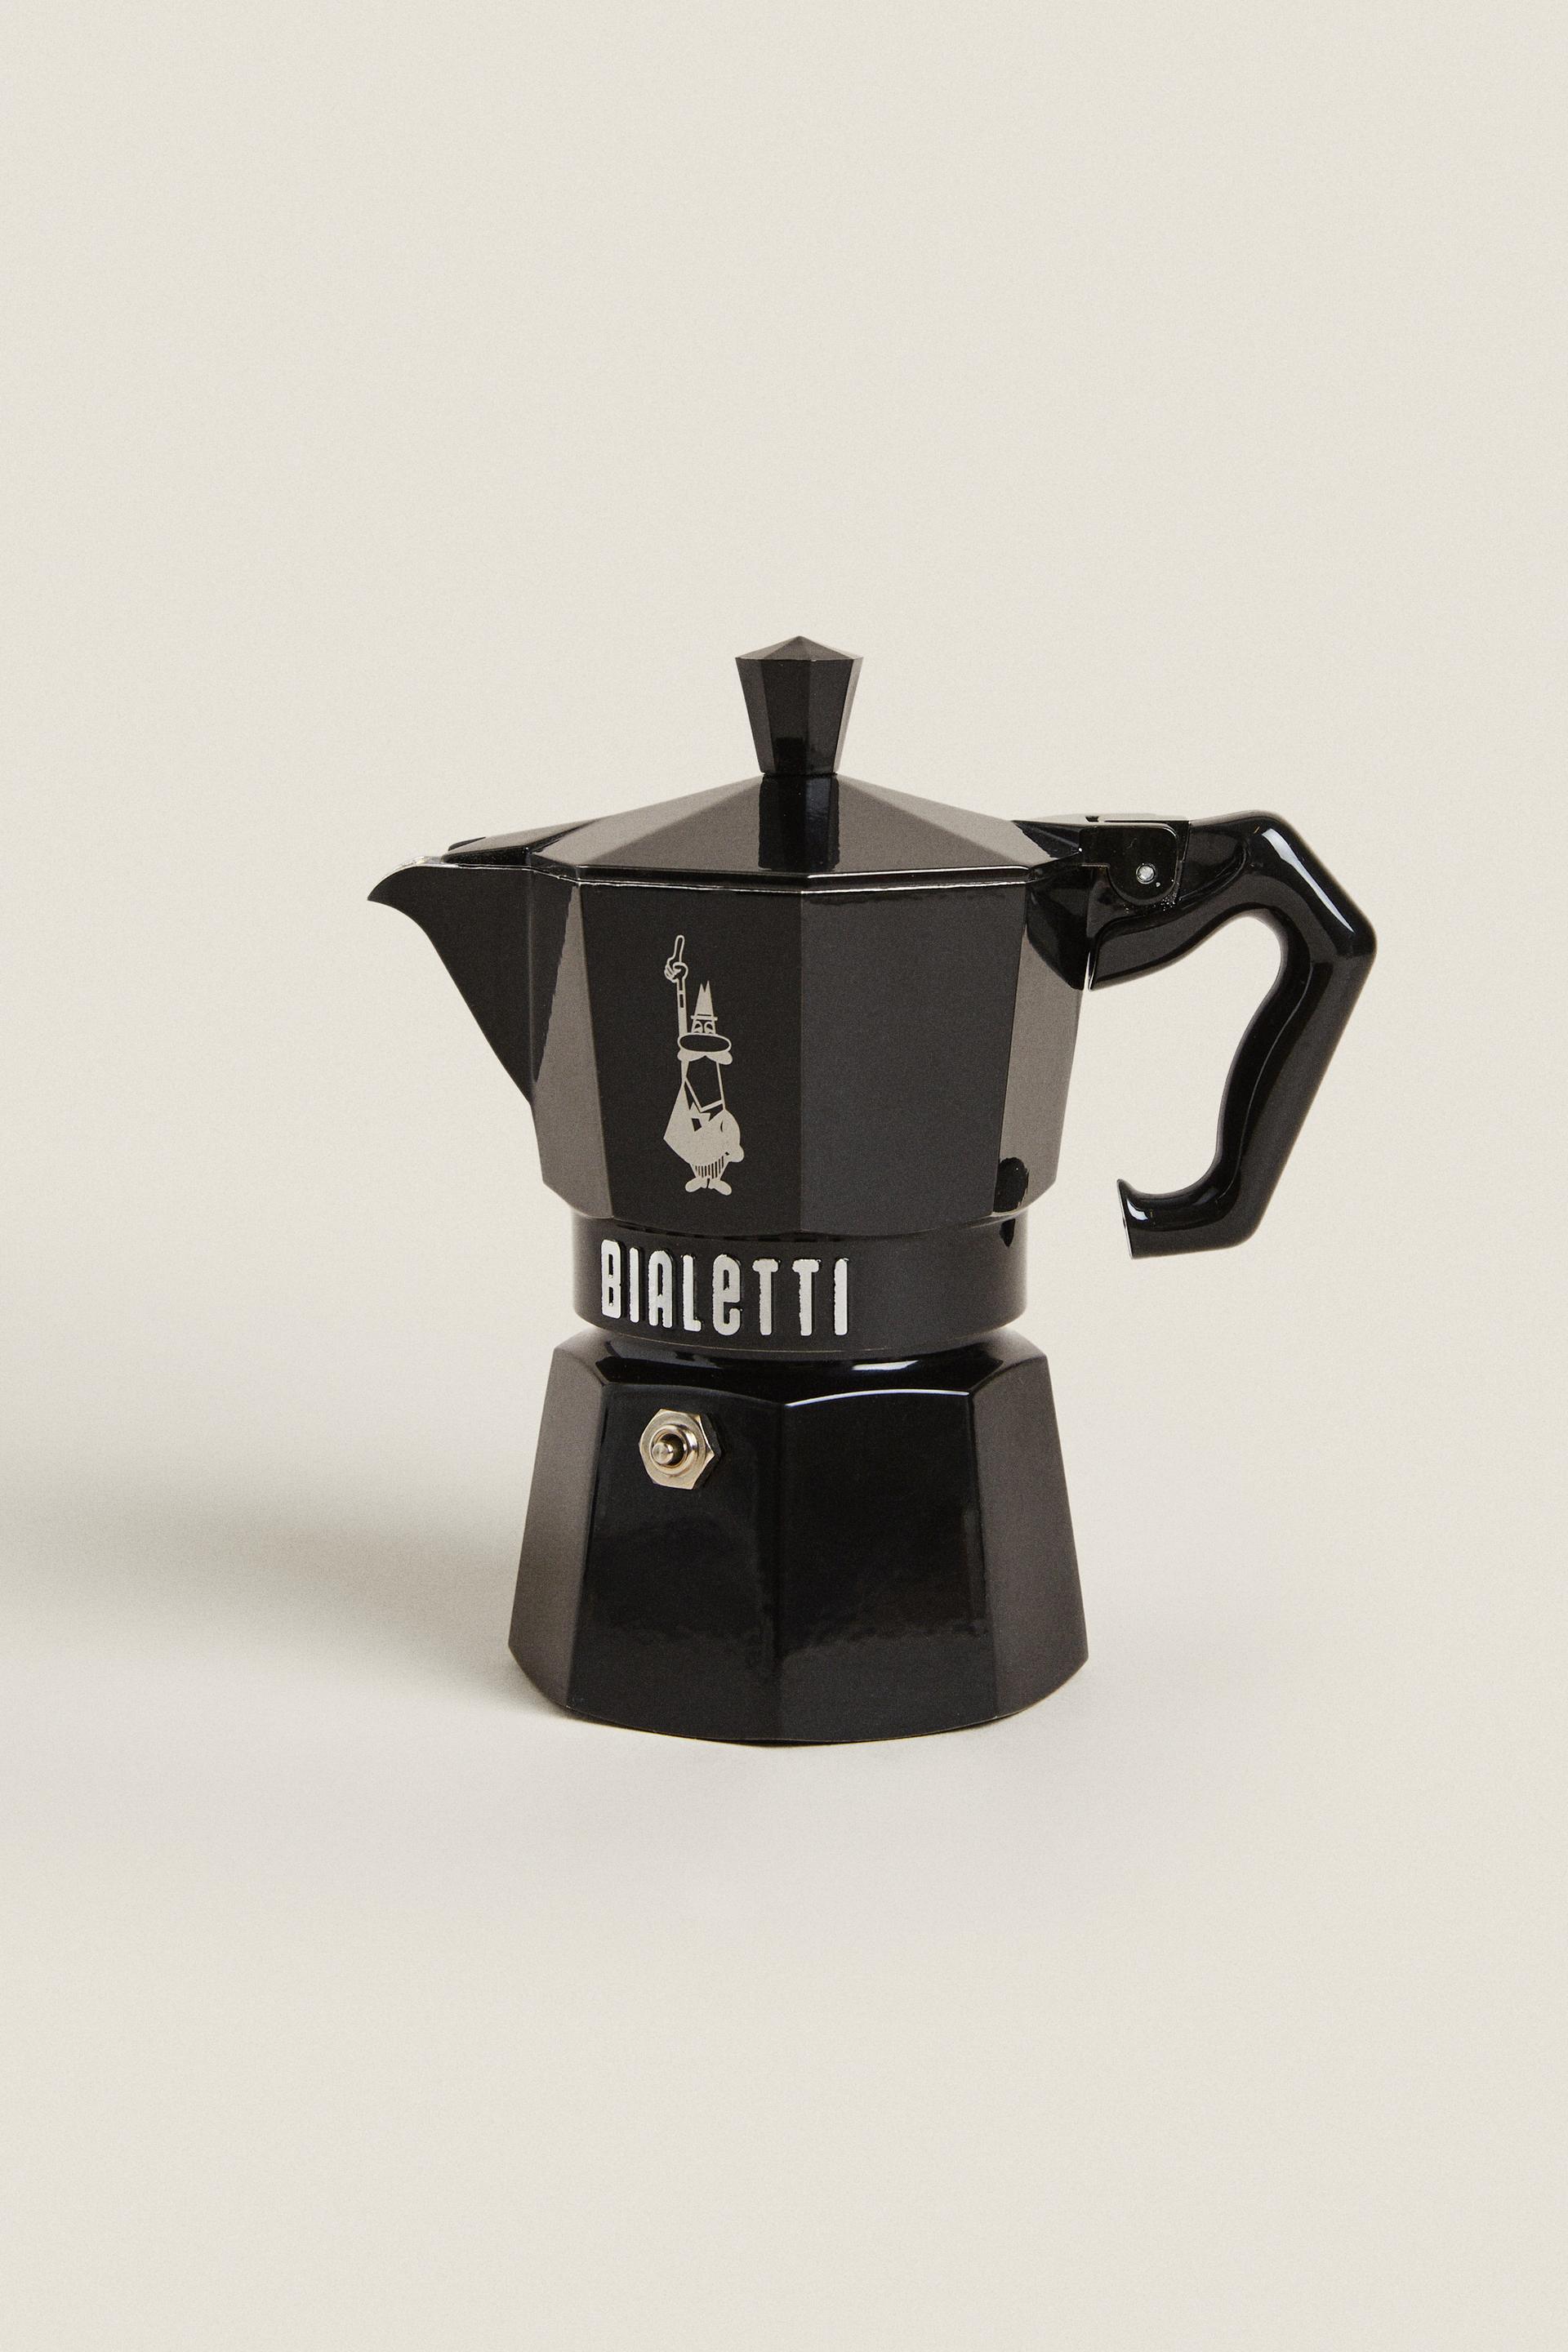 ☕️Rainbow ROJA 3 Tazas Cafetera Bialetti ➡️Una cafetera que une una  funcionalidad rigurosa a un gusto estético innovador, para dar más energía  al despertar de la mañana y un toque de originalidad